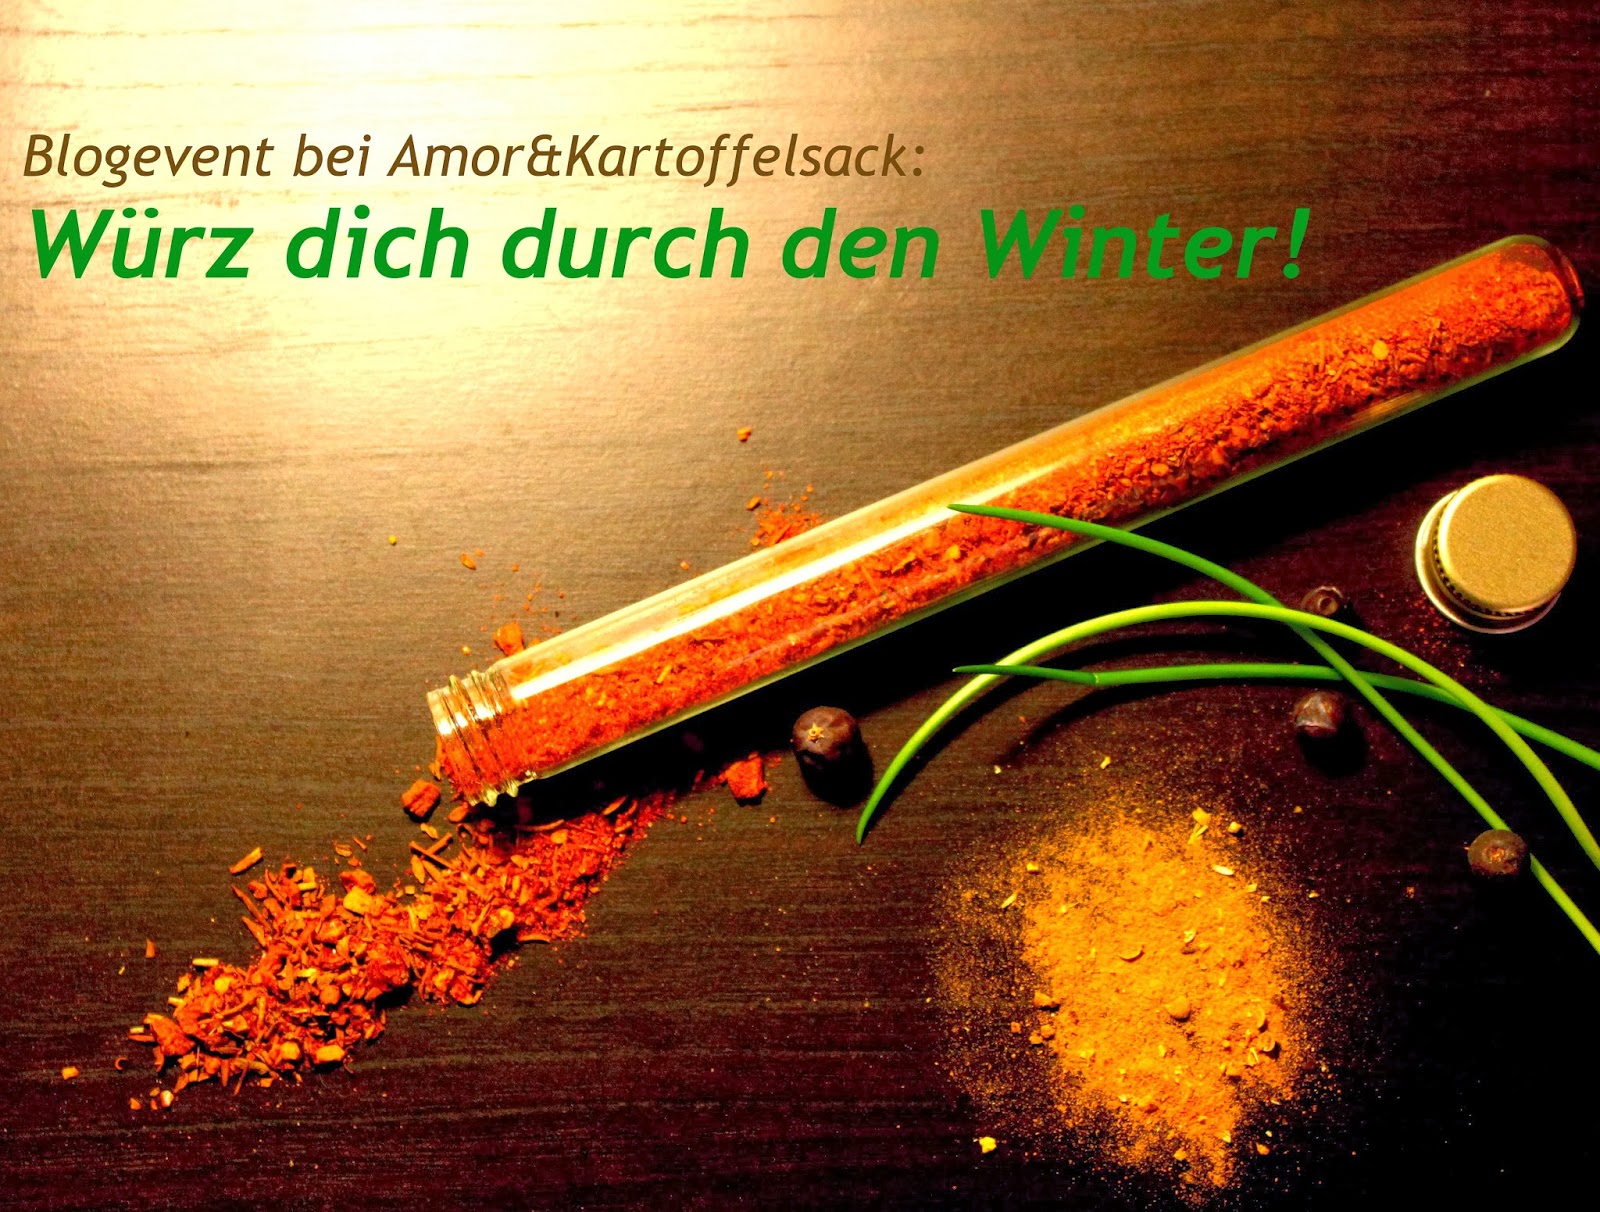 http://amorundkartoffelsack.blogspot.de/2013/12/wurz-dich-durch-den-winter-blogevent.html